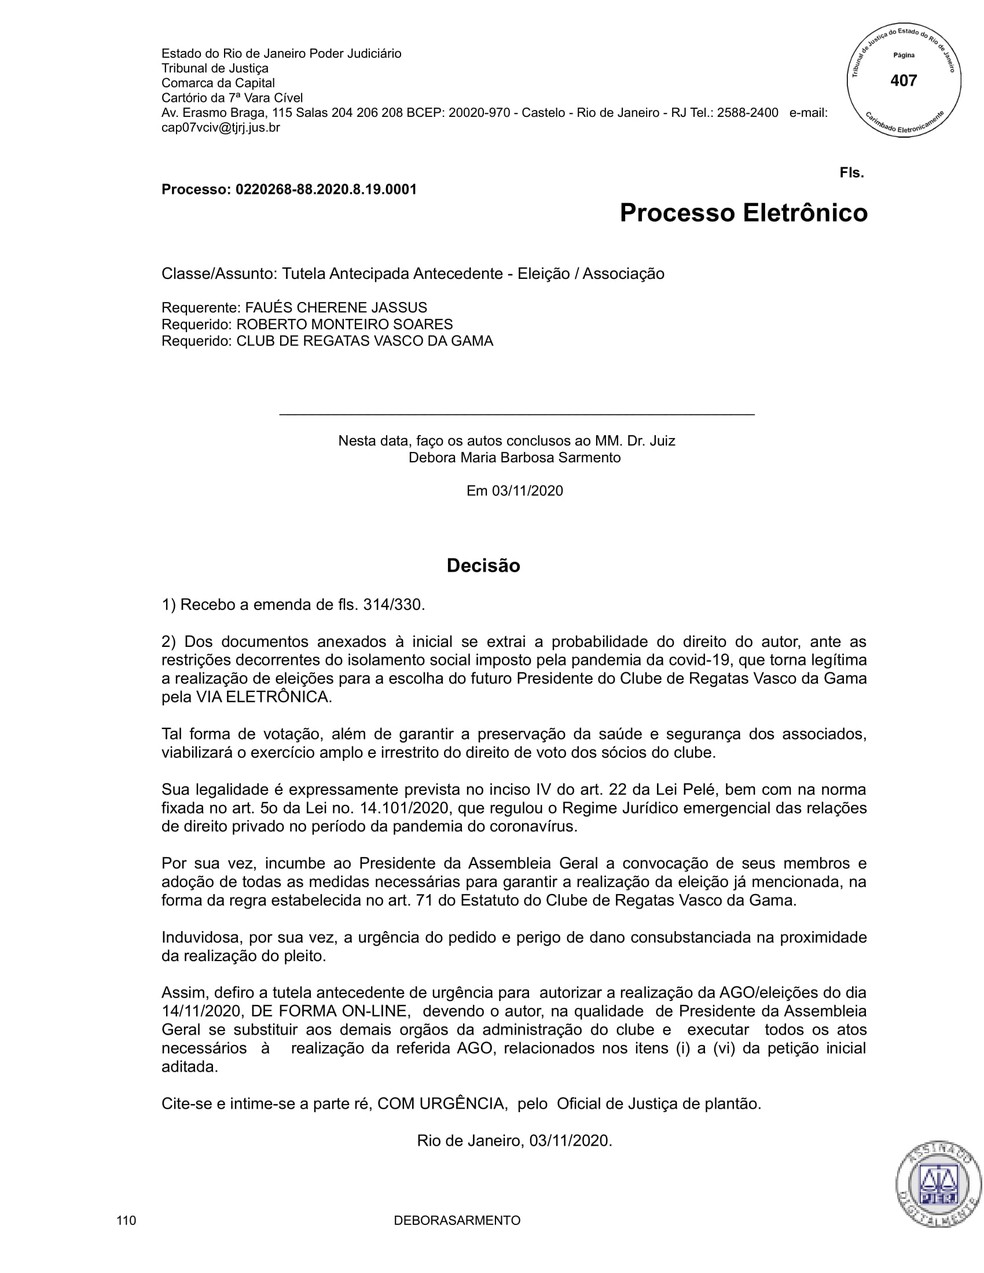 Decisão judicial que determina eleição online no dia 14 no Vasco - Parte 1 — Foto: Reprodução